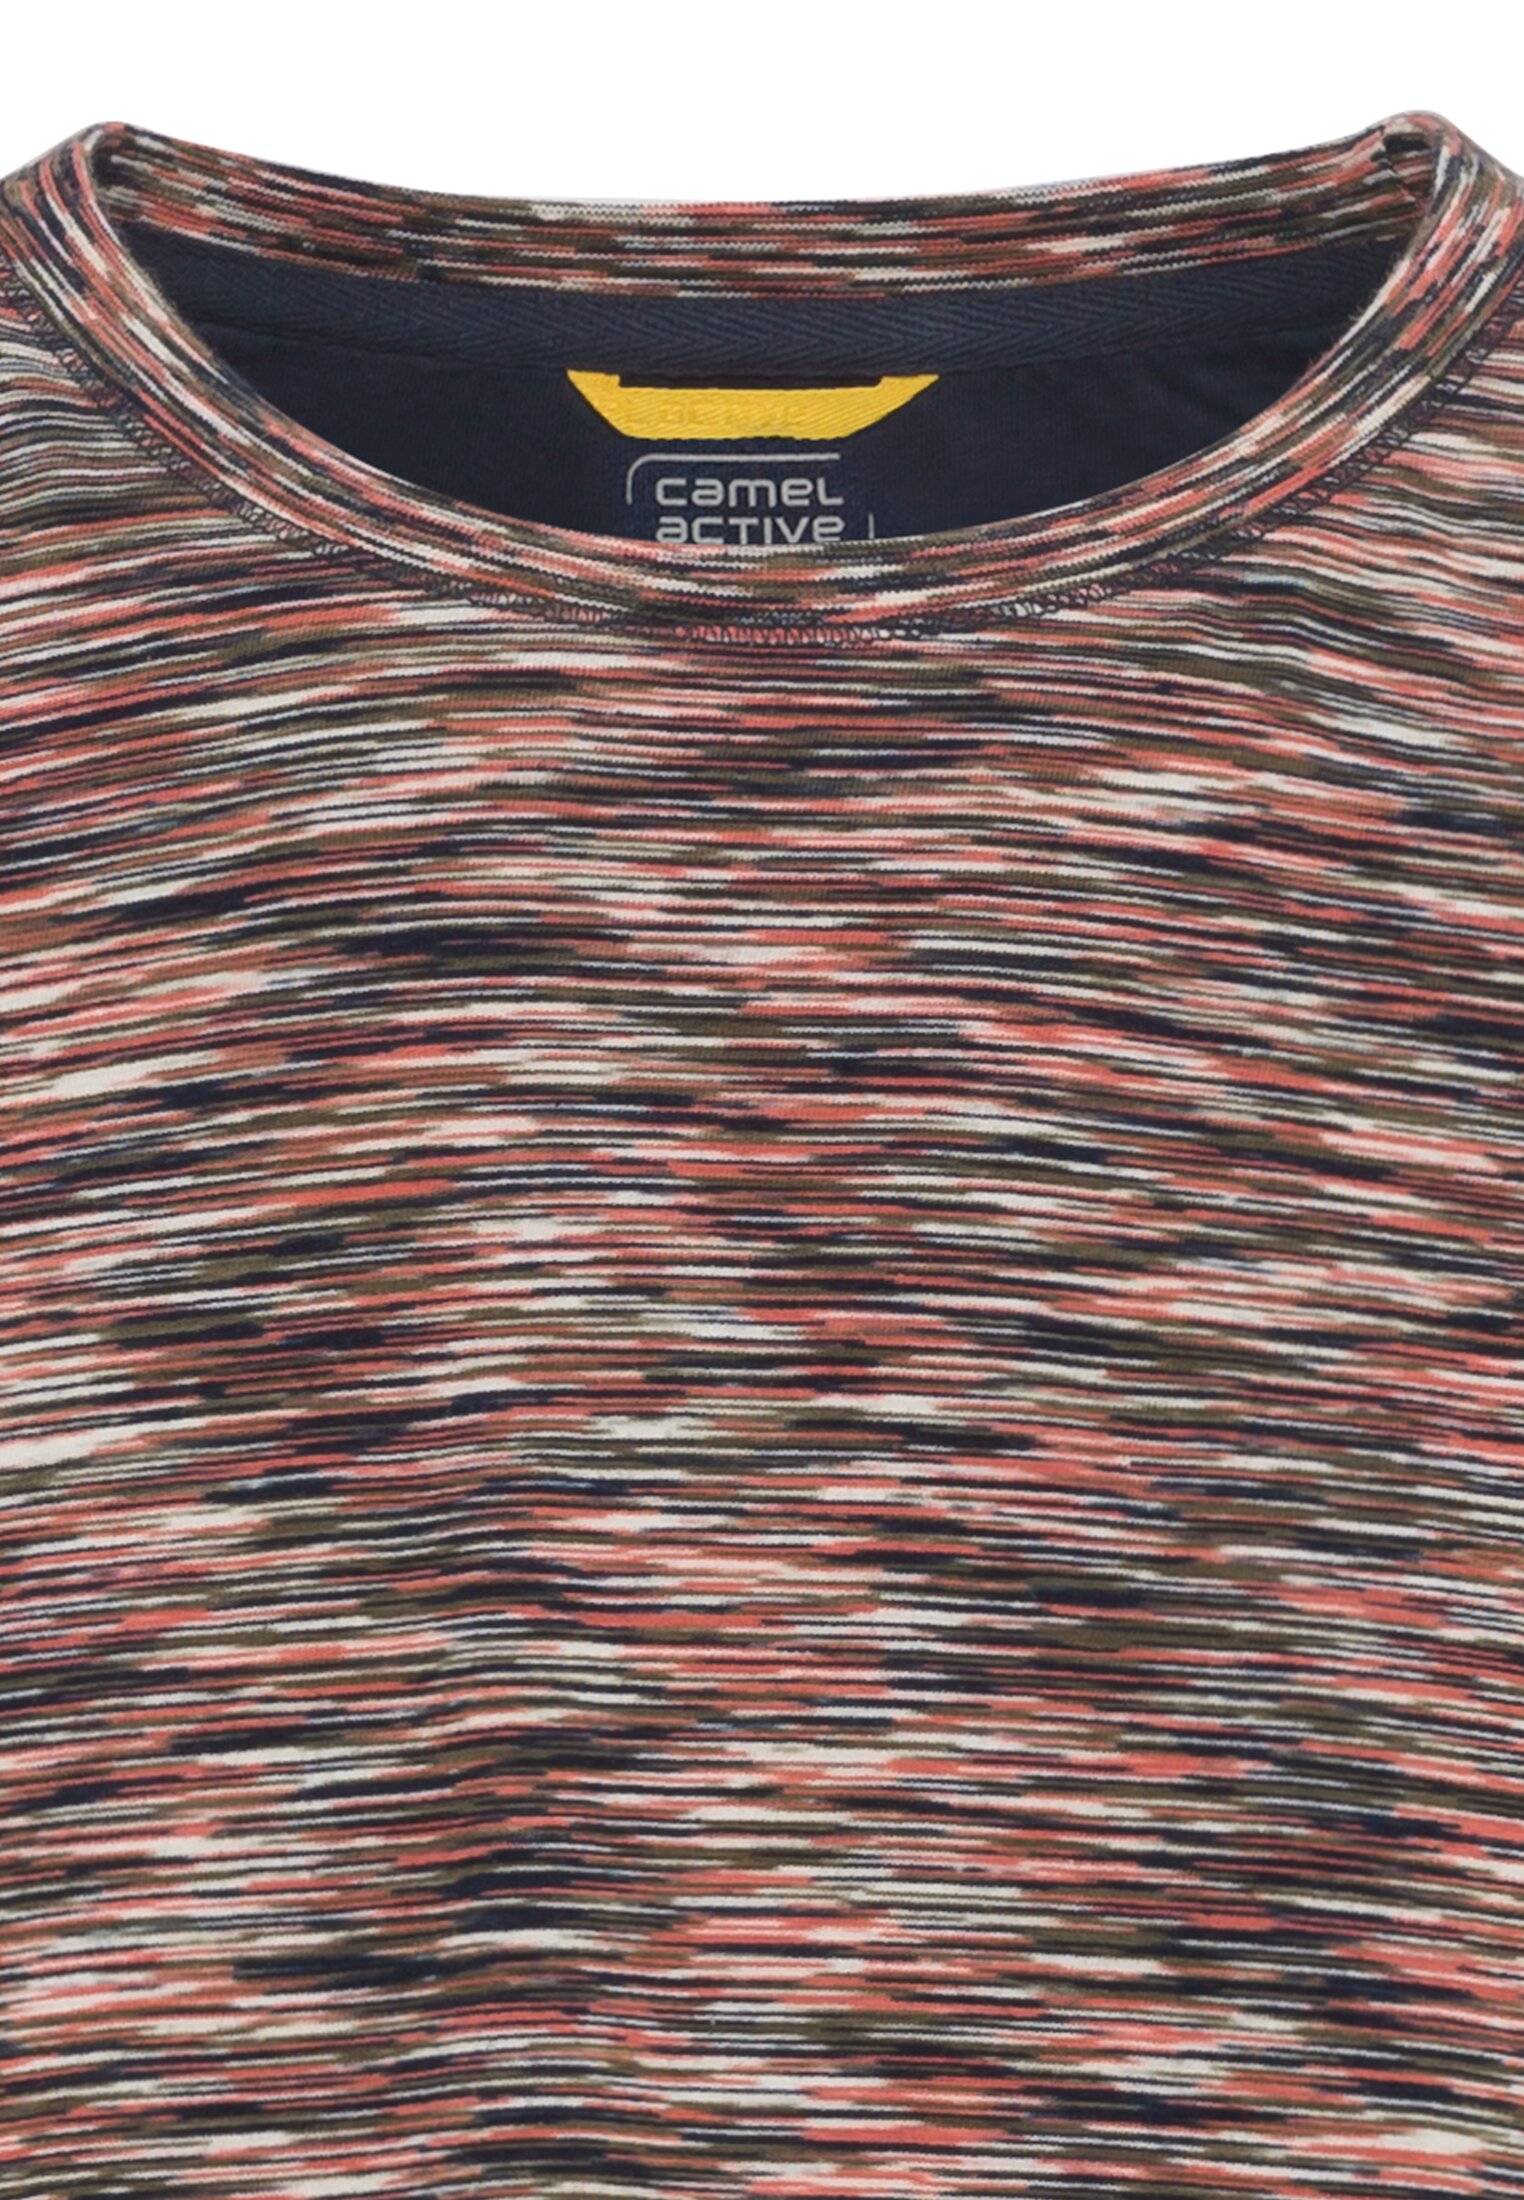 Мужская футболка Camel Active, коралловая, цвет коралловый, размер 46 - фото 3